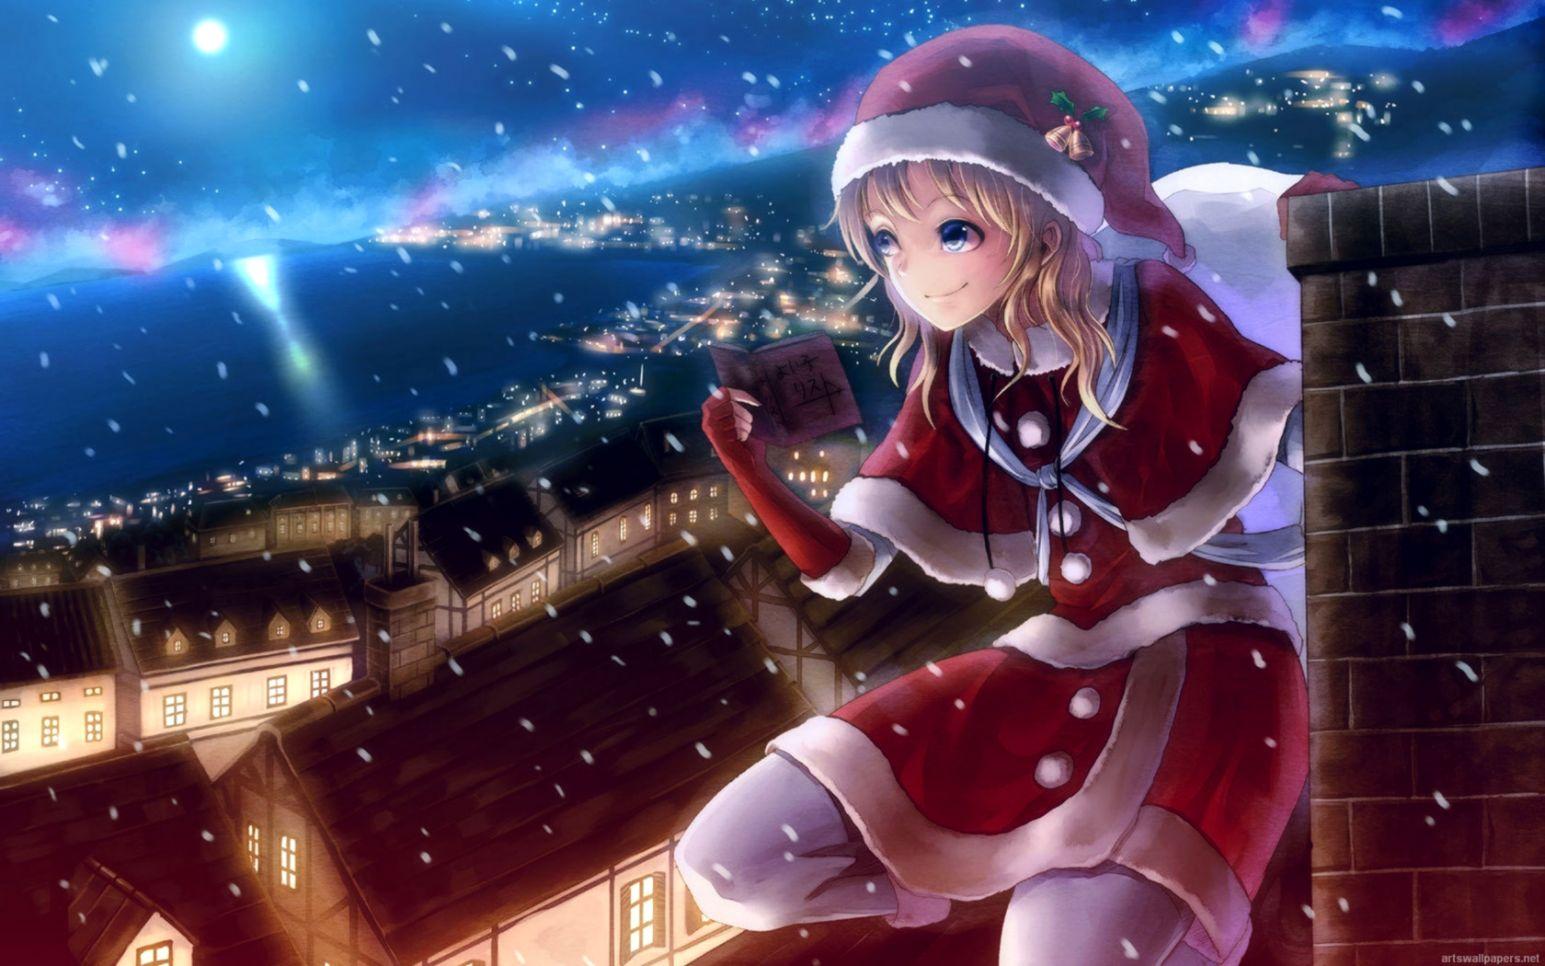 Anime Christmas Girl High Quality Wallpaper HD. Wallpaper